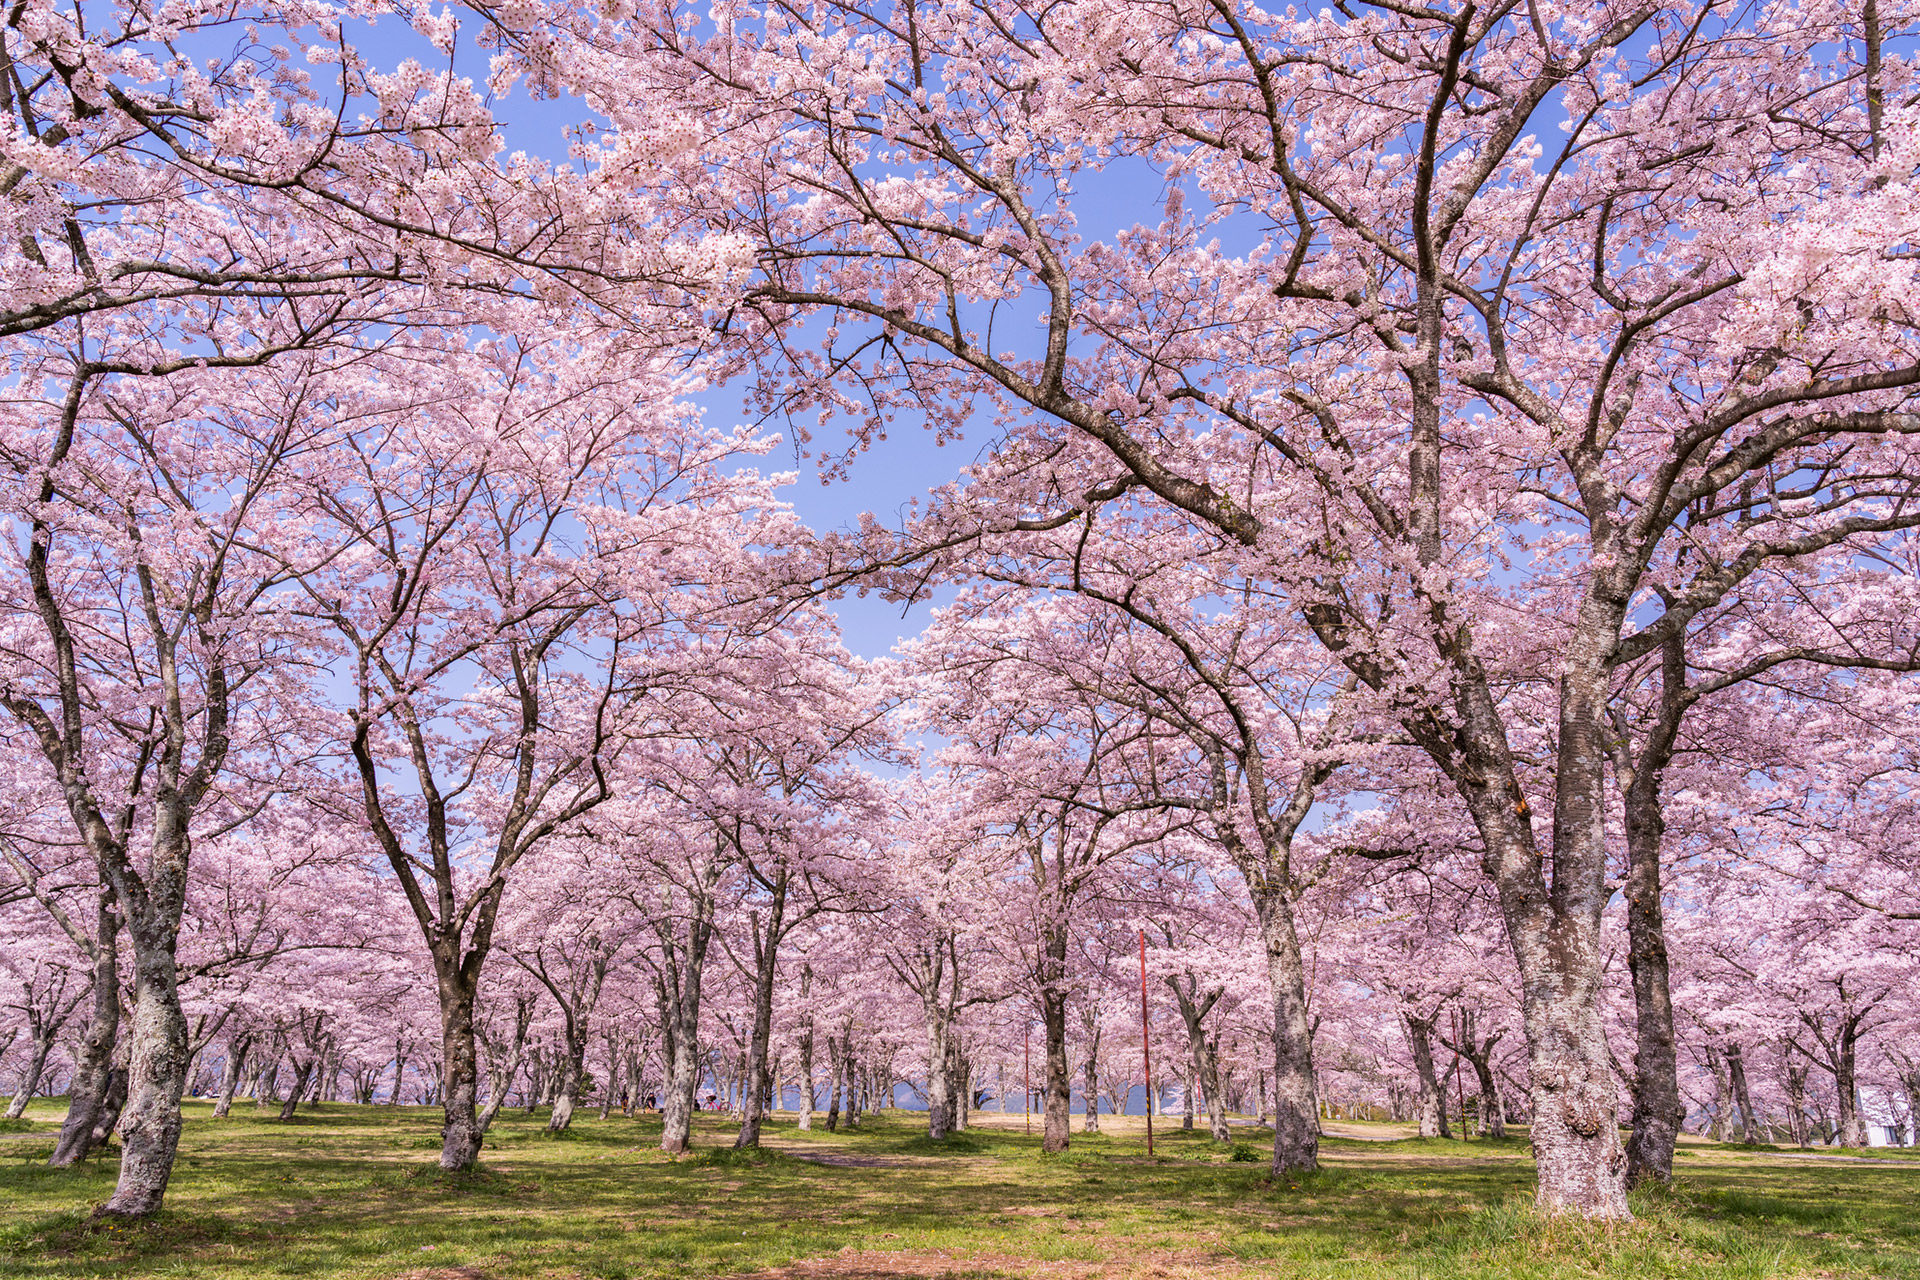 日本の桜の名所が多く集まる京都 22年の見頃はいつ頃になる Caedekyoto カエデ京都 紅葉と伝統美を引き継ぐバッグ